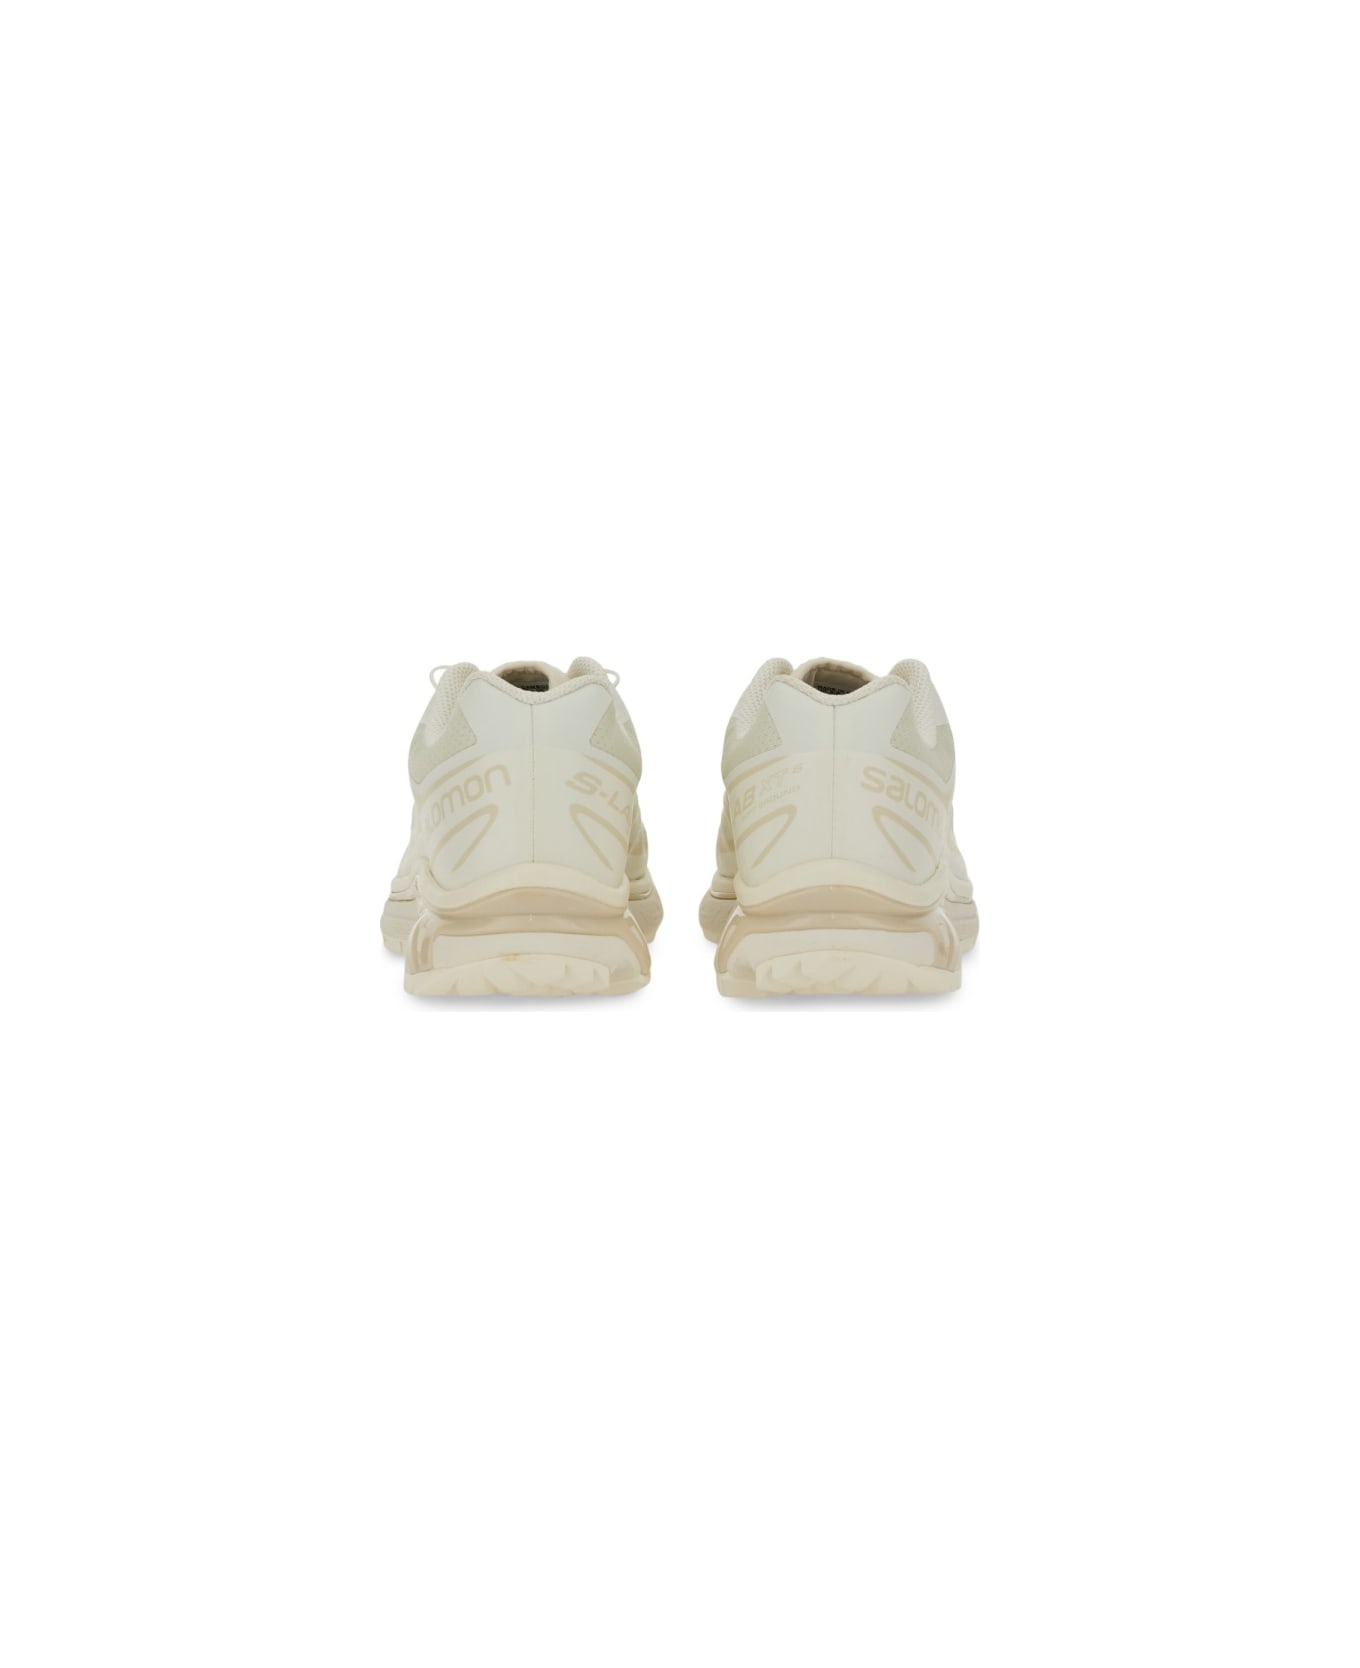 Salomon Sneaker "xt-6" - WHITE スニーカー